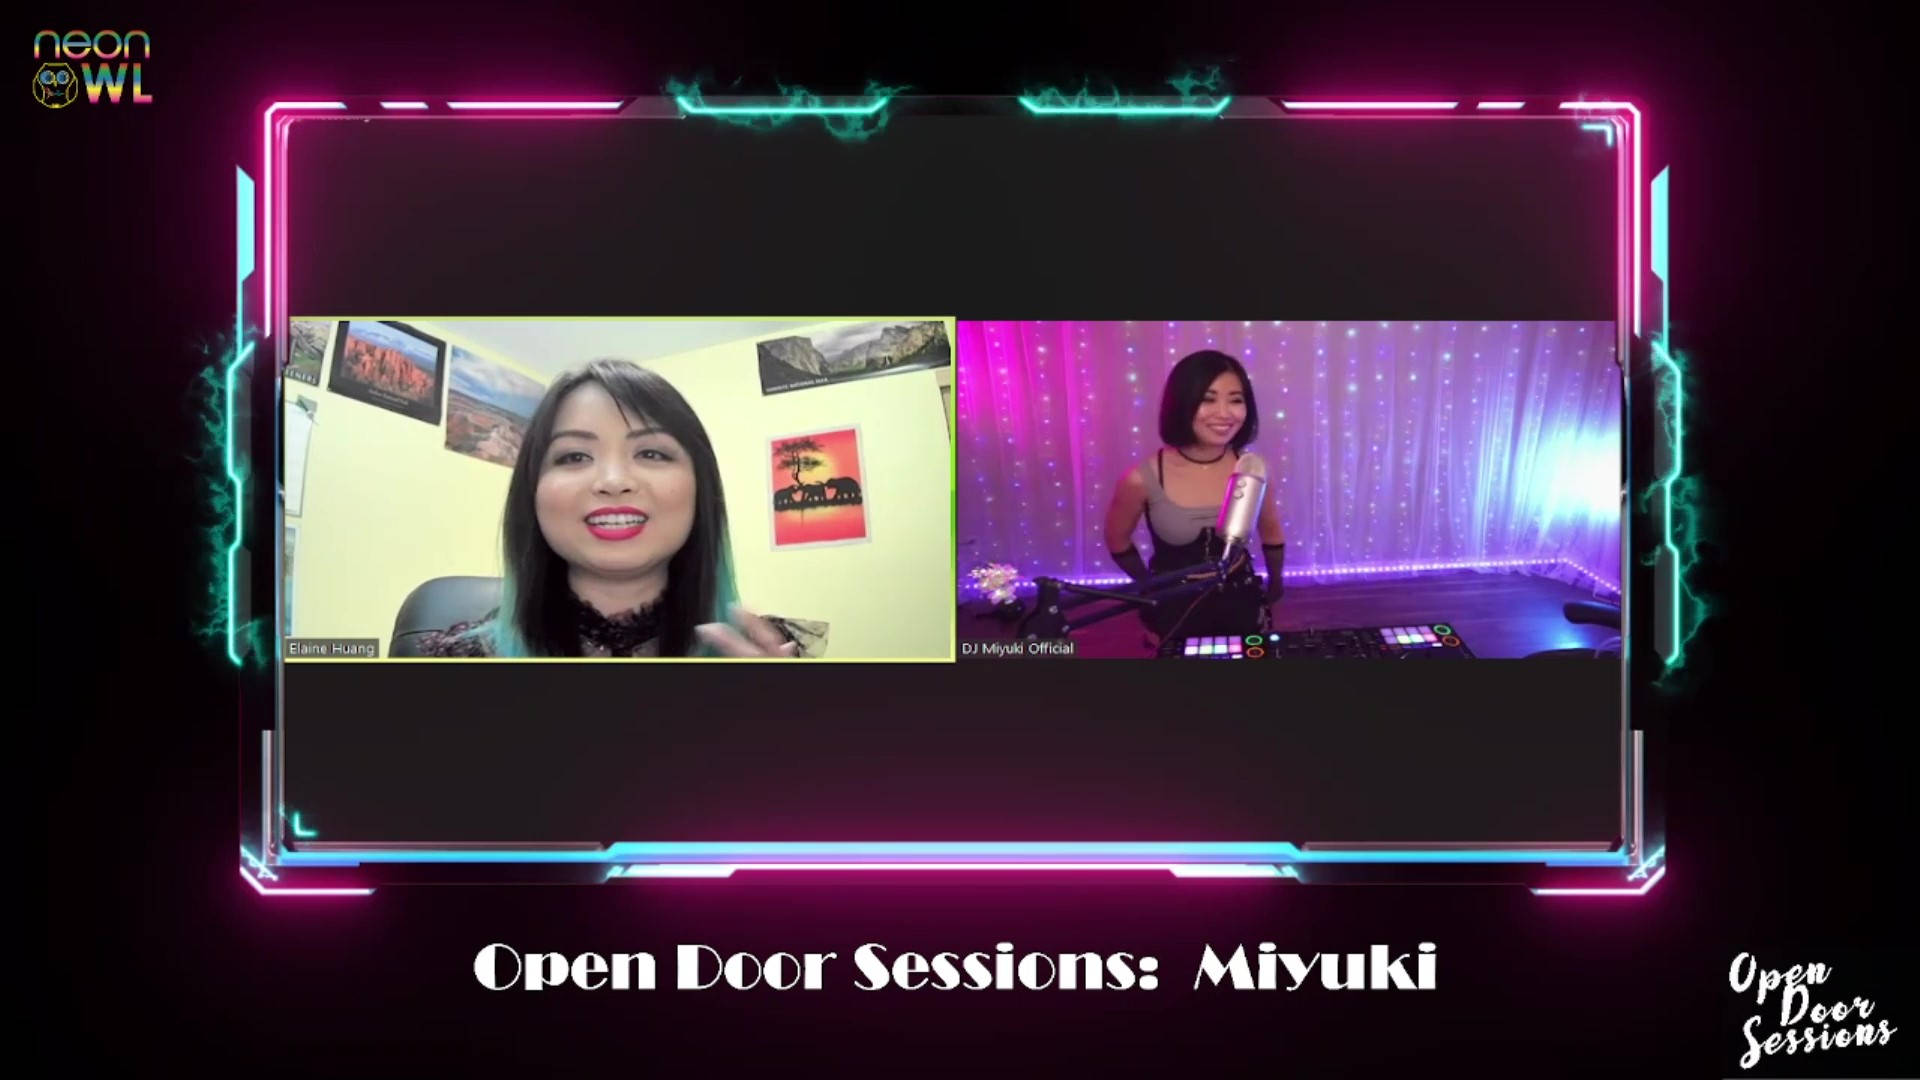 Open Door Sessions ODS MM Miyuki Twitch